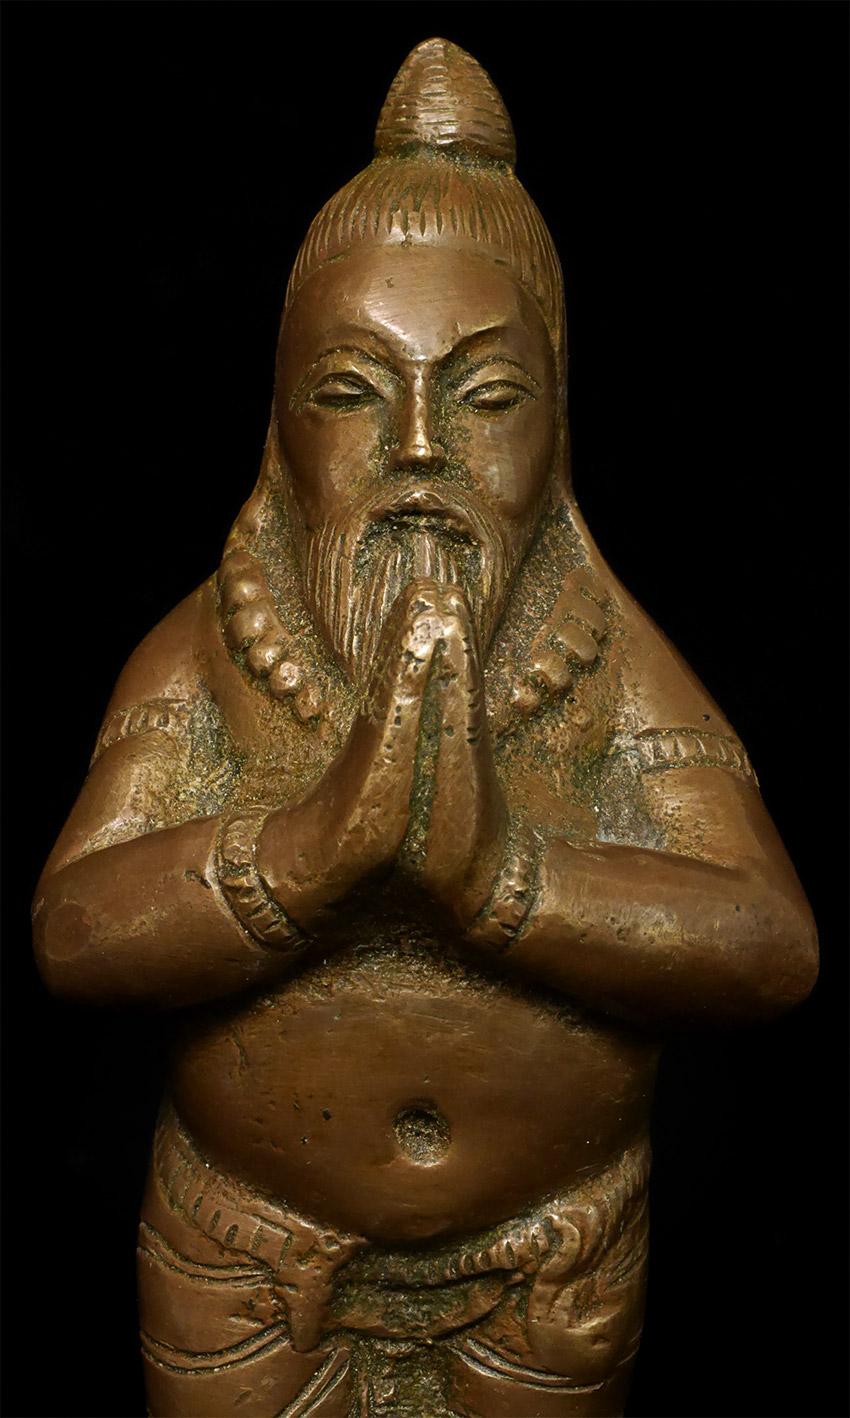 Antique Bronze Indian Yogi, Unique Solid-Cast Hindu Sculpture - 7816 For Sale 2